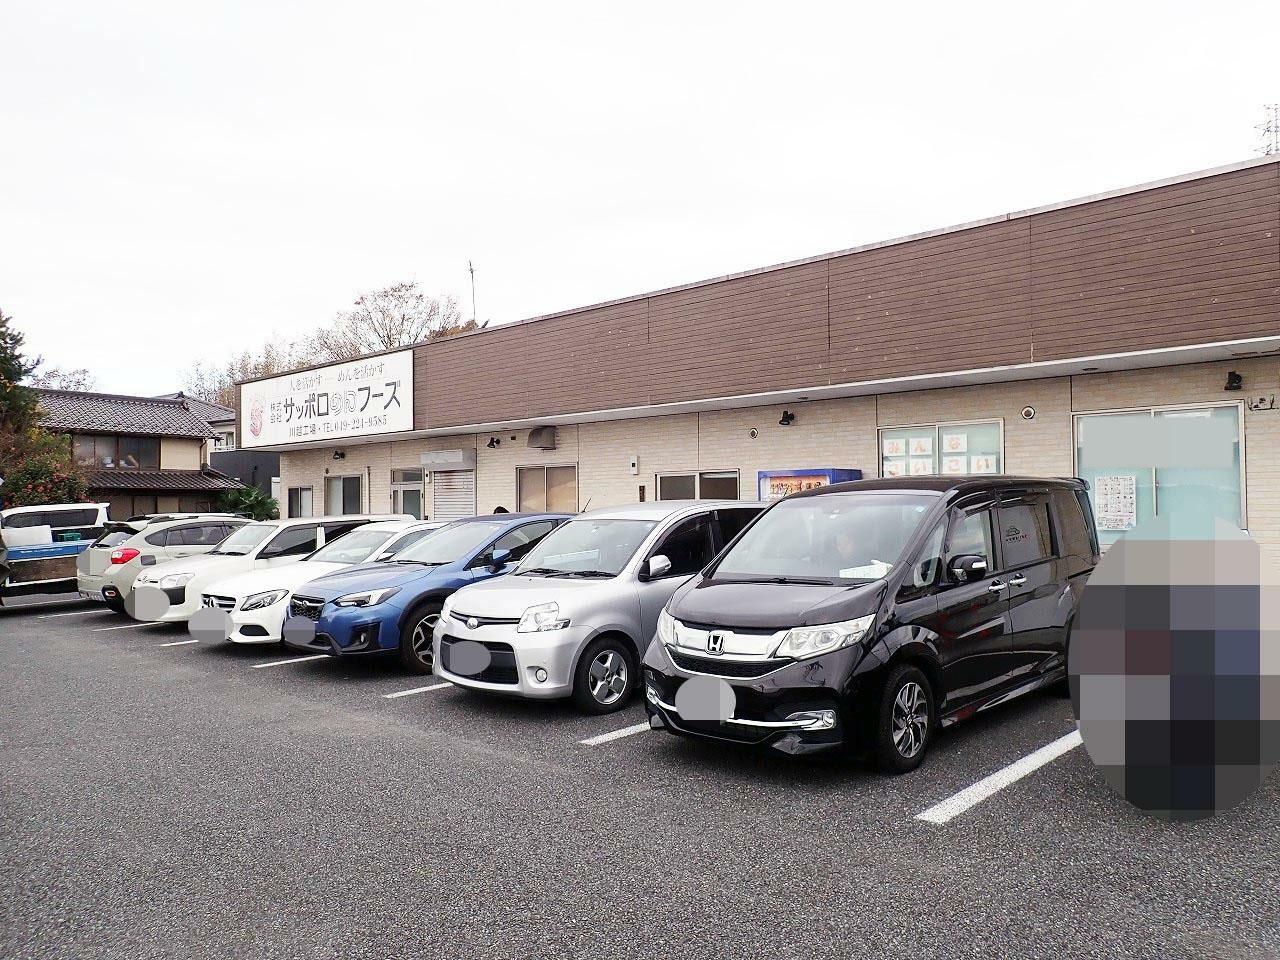 販売する施設は住所でいうと川越市寺山にあります。施設の前に駐車場が完備されています